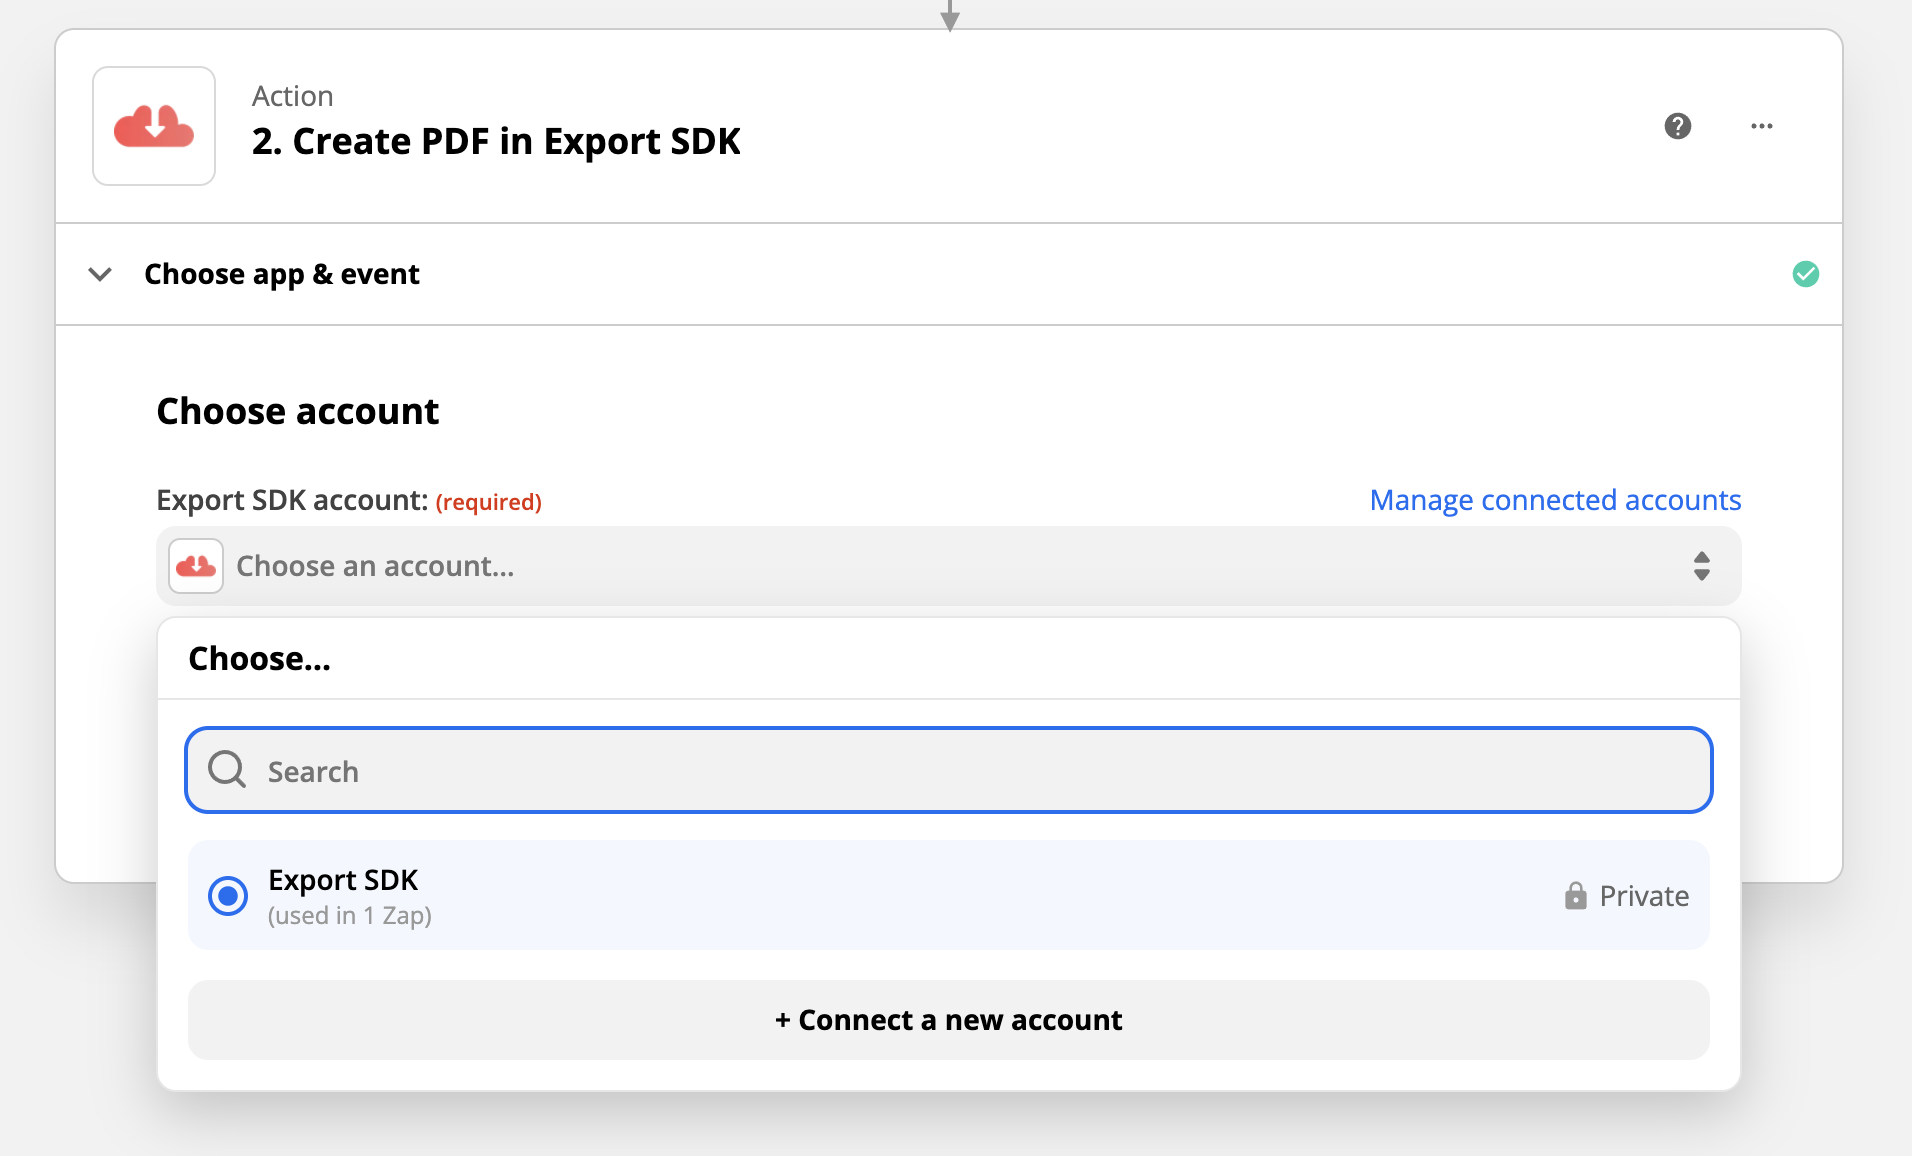 Selecting an Export SDK account